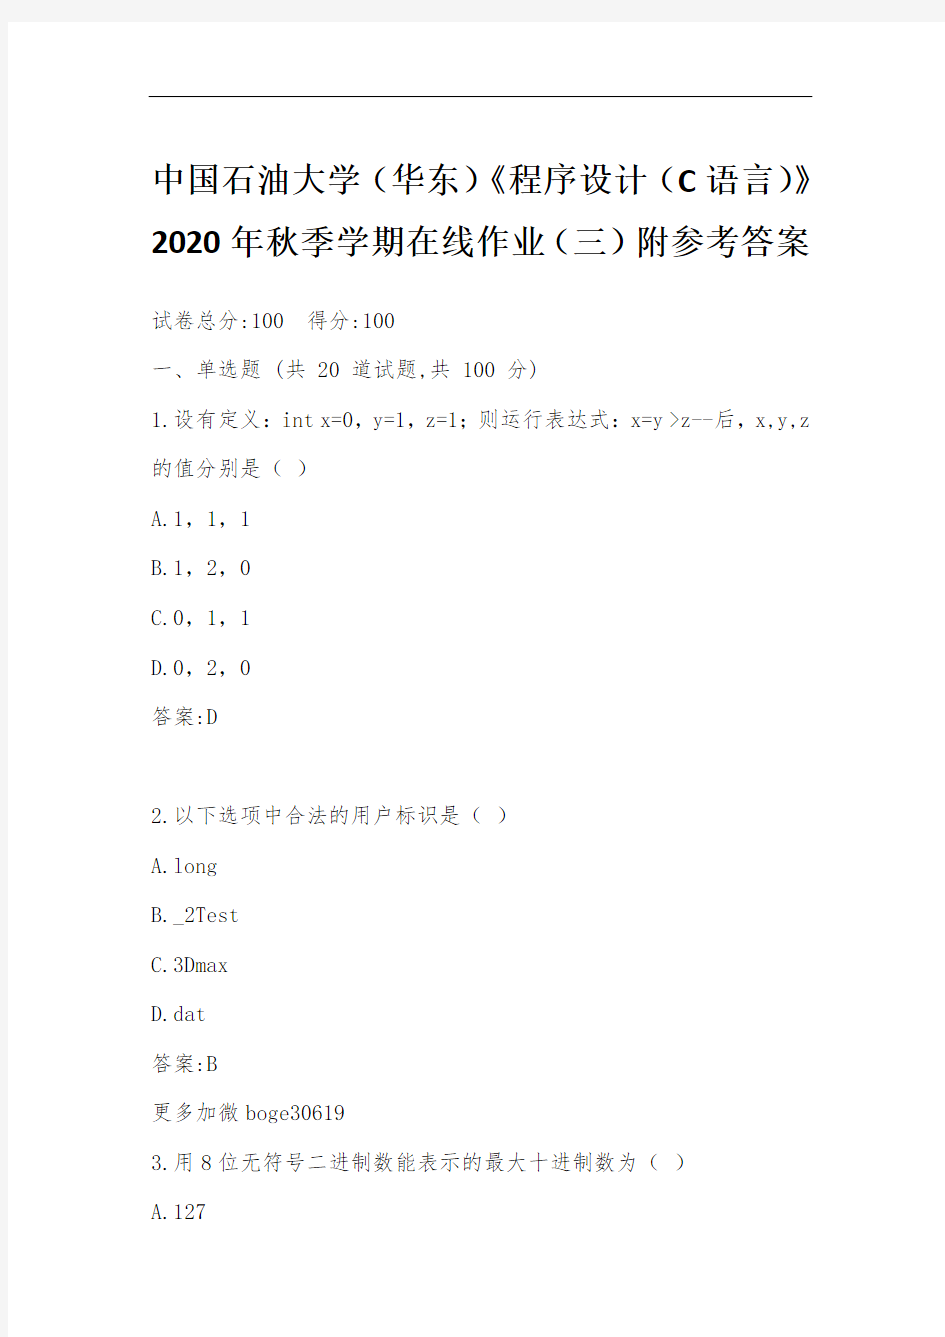 中国石油大学(华东)《程序设计(C语言)》2020年秋季学期在线作业(三)附参考答案